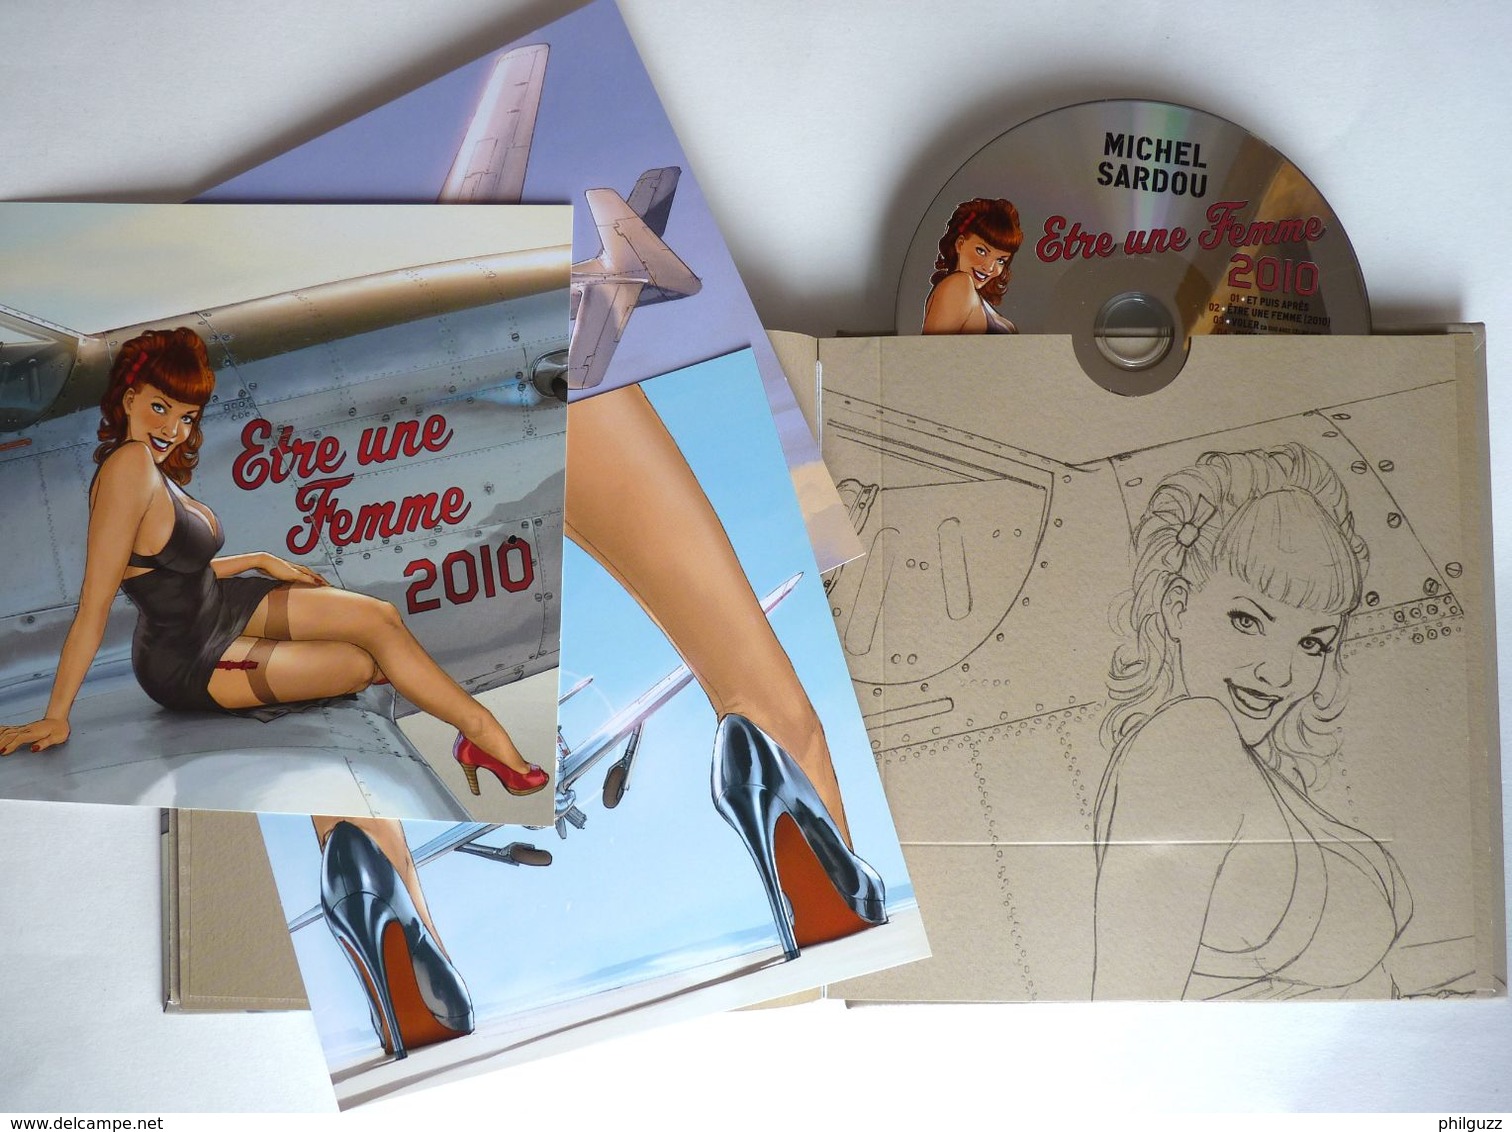 LIVRE CD COLLECTOR édition Limité ETRE UNE FEMME Michel SARDOU - HUGAULT 2010 AVEC 3 XL ET UN CD - Records